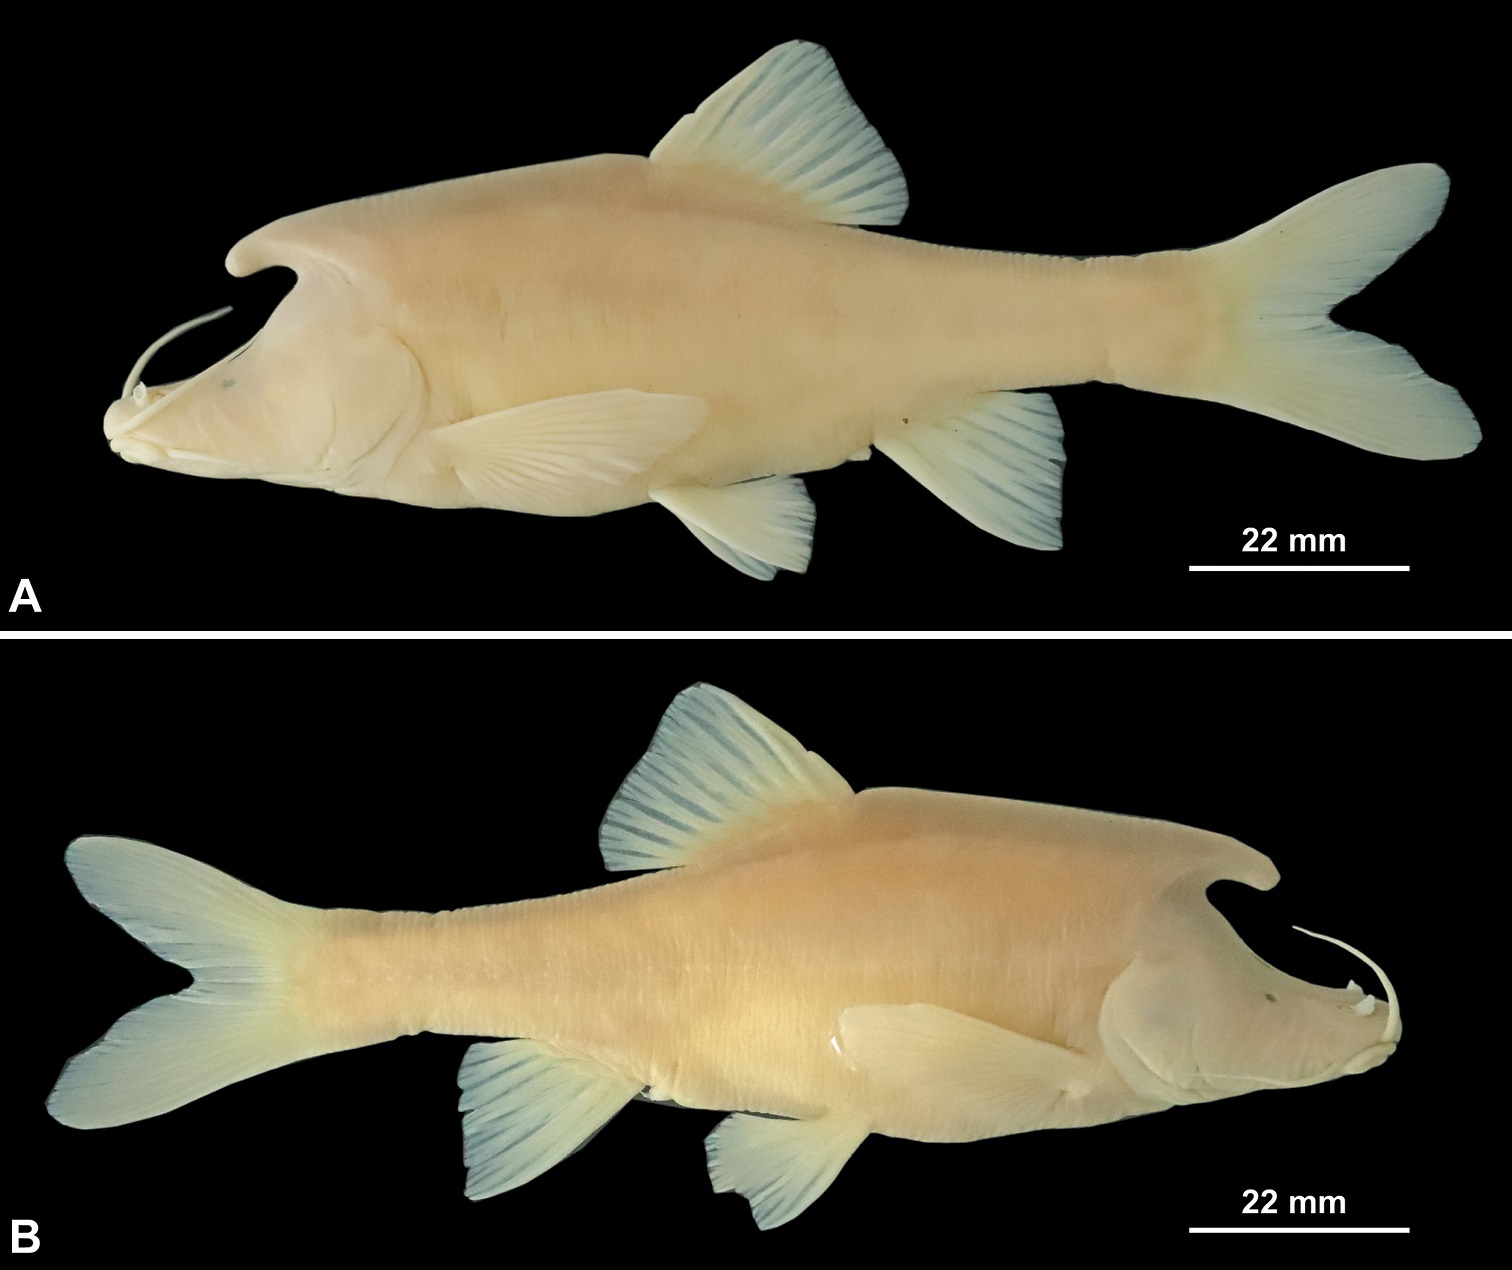 Phát hiện loài cá mới có cấu trúc giống sừng bí ẩn ở phía sau đầu - Ảnh 2.